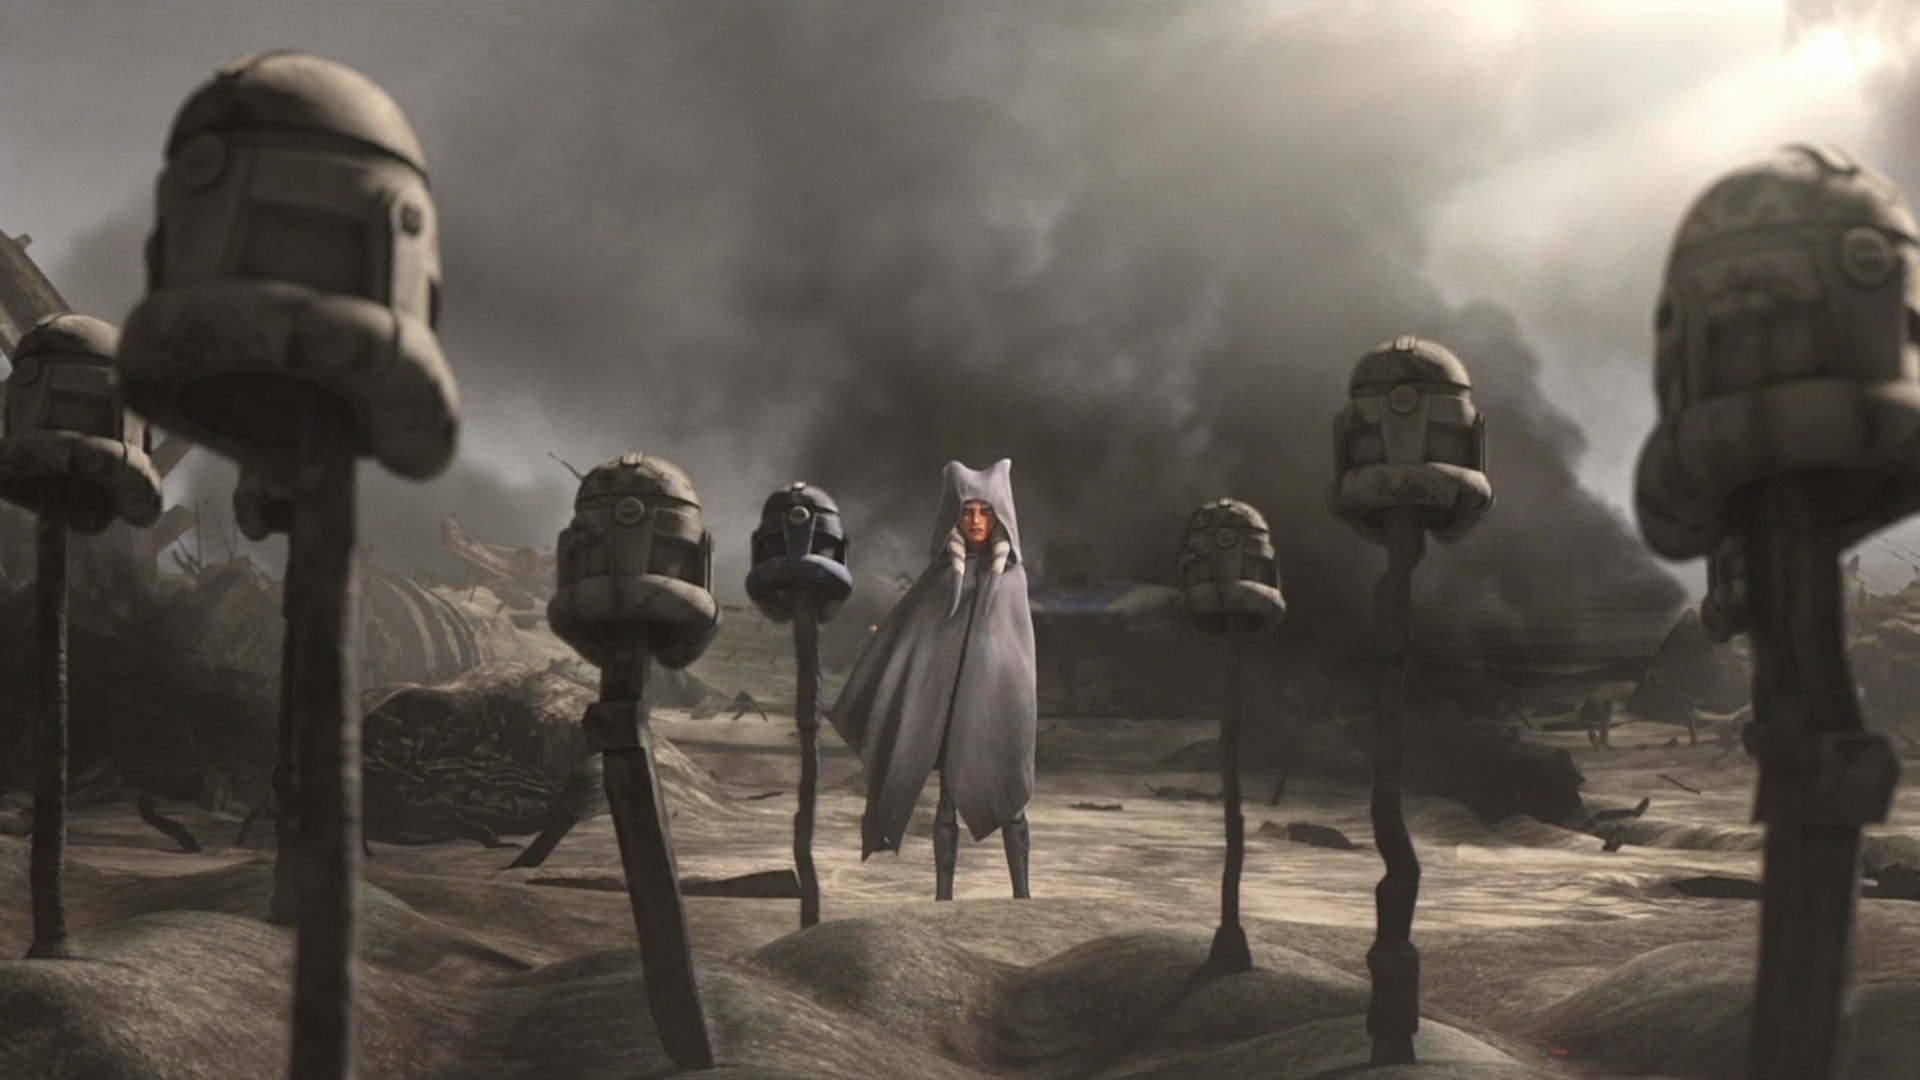 Ahsoka parada frente a las tumbas de sus amigos y camaradas caídos en el final de la serie The Clone Wars.